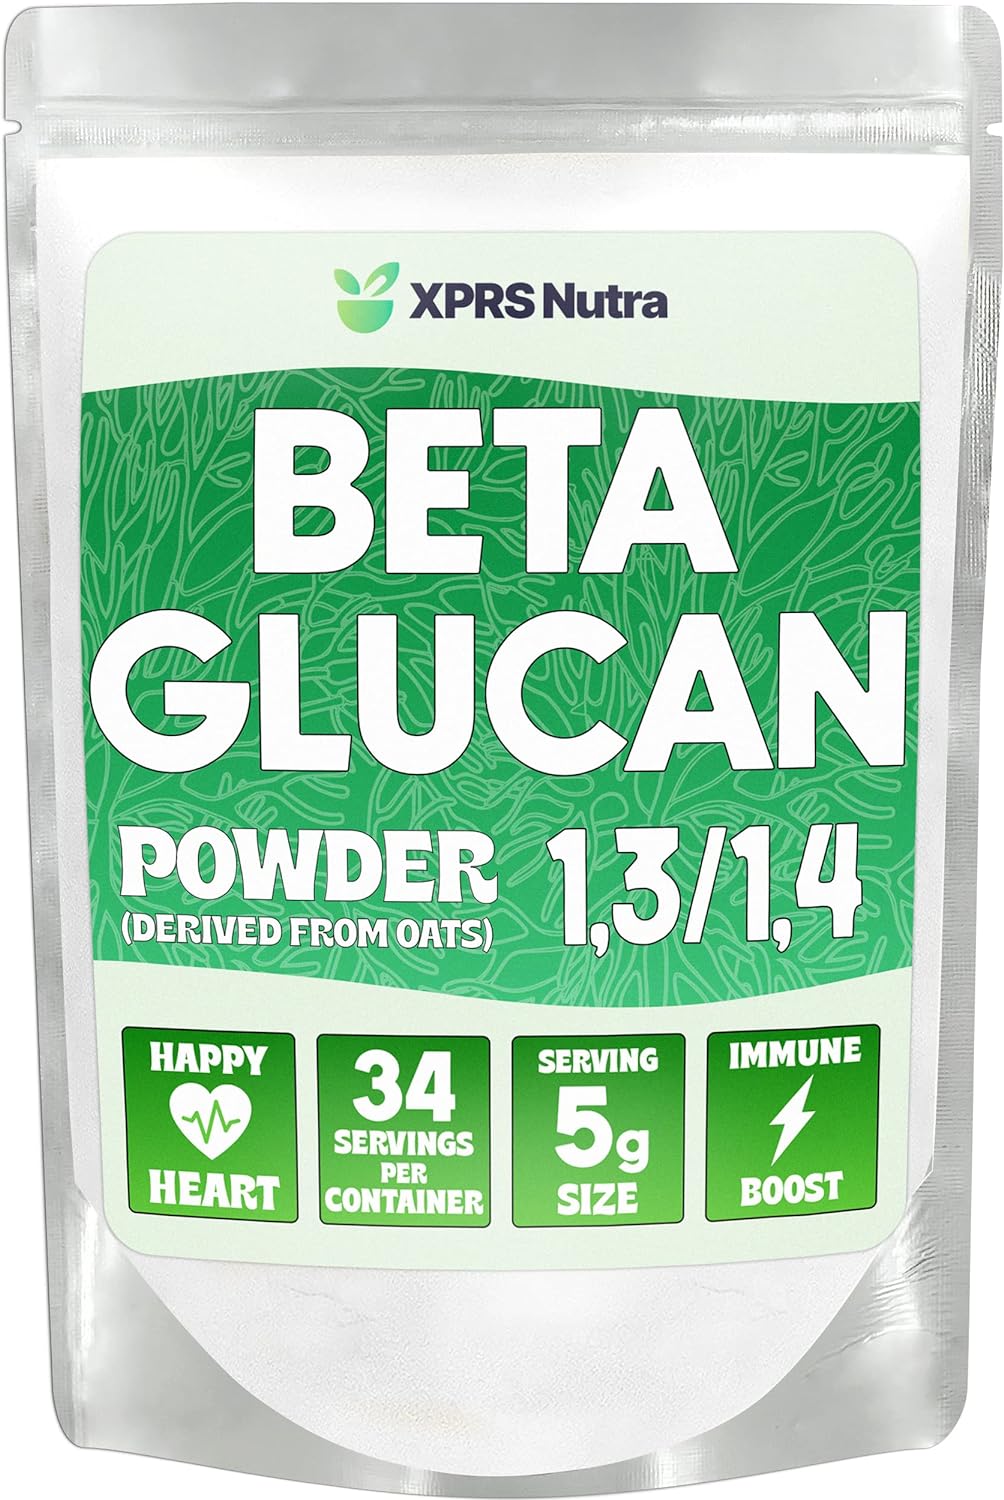 Oat Beta Glucan Powder 1,3/1,4